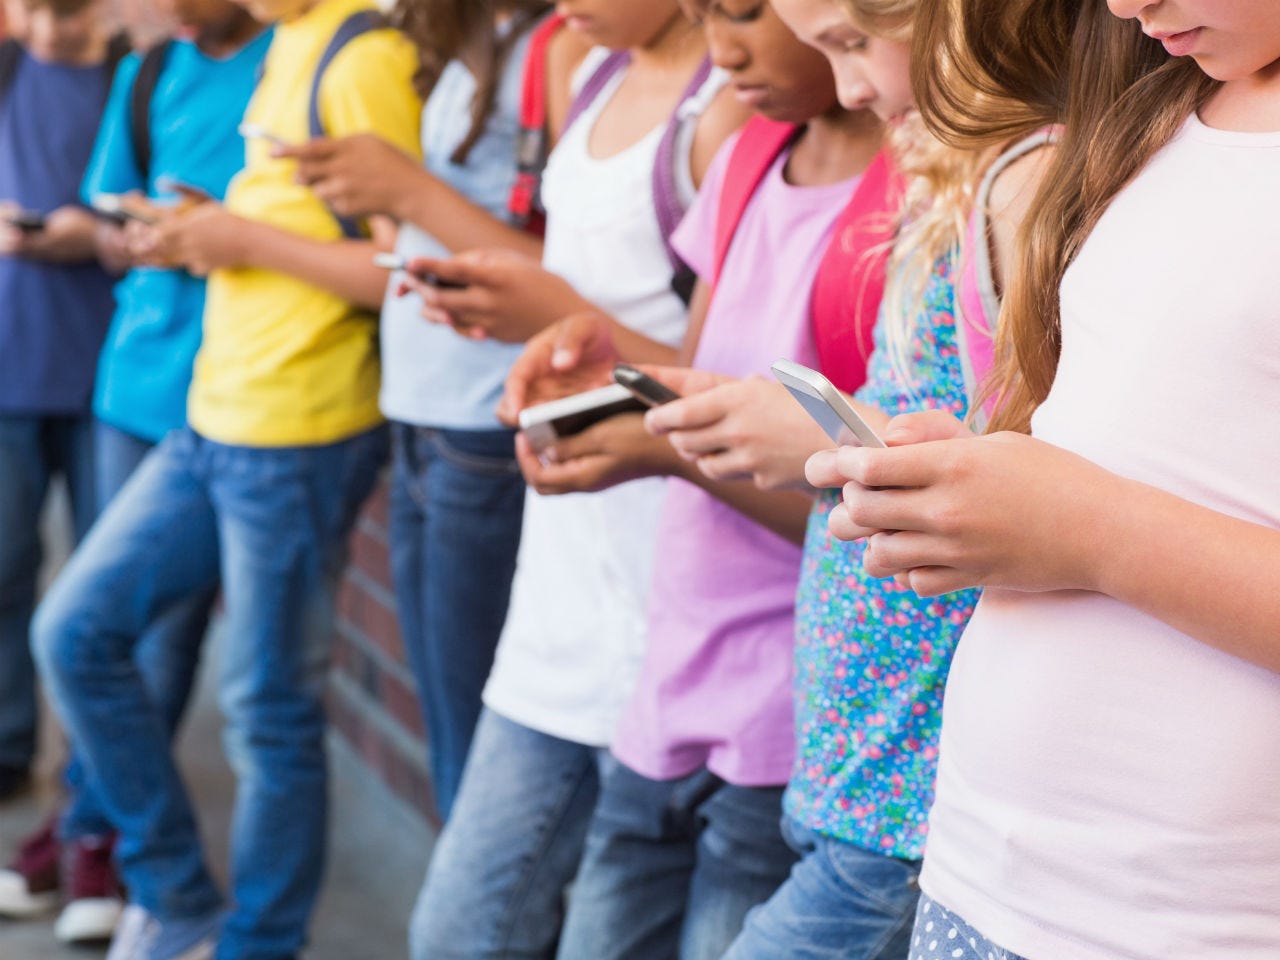 Can Tech Companies Keep Children Safe Online?